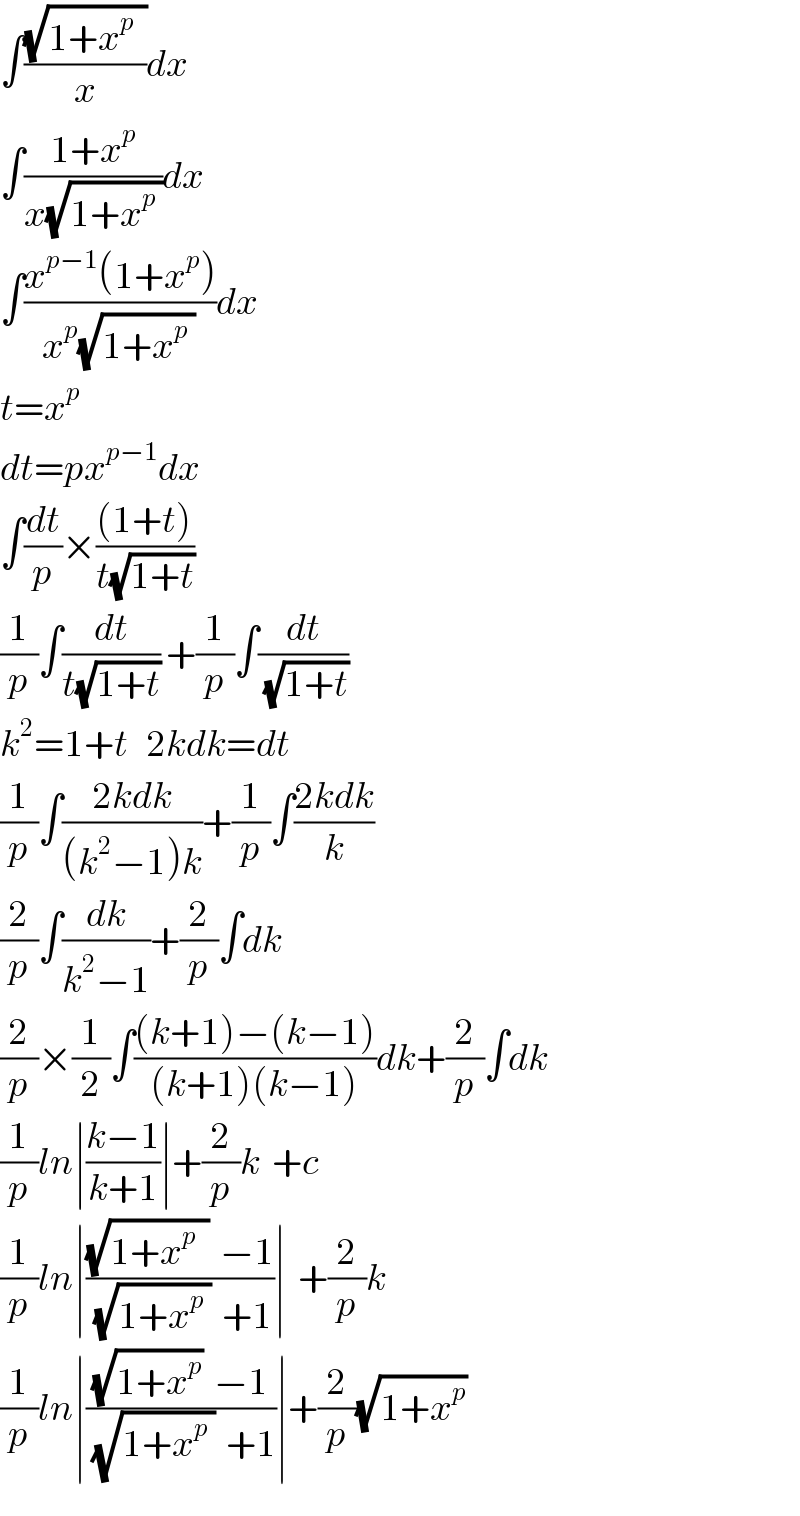 ∫((√(1+x^p   ))/x)dx  ∫((1+x^p )/(x(√(1+x^p  ))))dx  ∫((x^(p−1) (1+x^p ))/(x^p (√(1+x^p  ))))dx  t=x^p   dt=px^(p−1) dx  ∫(dt/p)×(((1+t))/(t(√(1+t))))  (1/p)∫(dt/(t(√(1+t)))) +(1/p)∫(dt/(√(1+t)))  k^2 =1+t   2kdk=dt  (1/p)∫((2kdk)/((k^2 −1)k))+(1/p)∫((2kdk)/k)  (2/p)∫(dk/(k^2 −1))+(2/p)∫dk  (2/p)×(1/2)∫(((k+1)−(k−1))/((k+1)(k−1)))dk+(2/p)∫dk  (1/p)ln∣((k−1)/(k+1))∣+(2/p)k  +c  (1/p)ln∣(((√(1+x^p   ))  −1)/((√(1+x^p  ))  +1))∣  +(2/p)k  (1/p)ln∣(((√(1+x^p ))  −1)/((√(1+x_ ^p  ))  +1))∣+(2/p)(√(1+x^p ))  